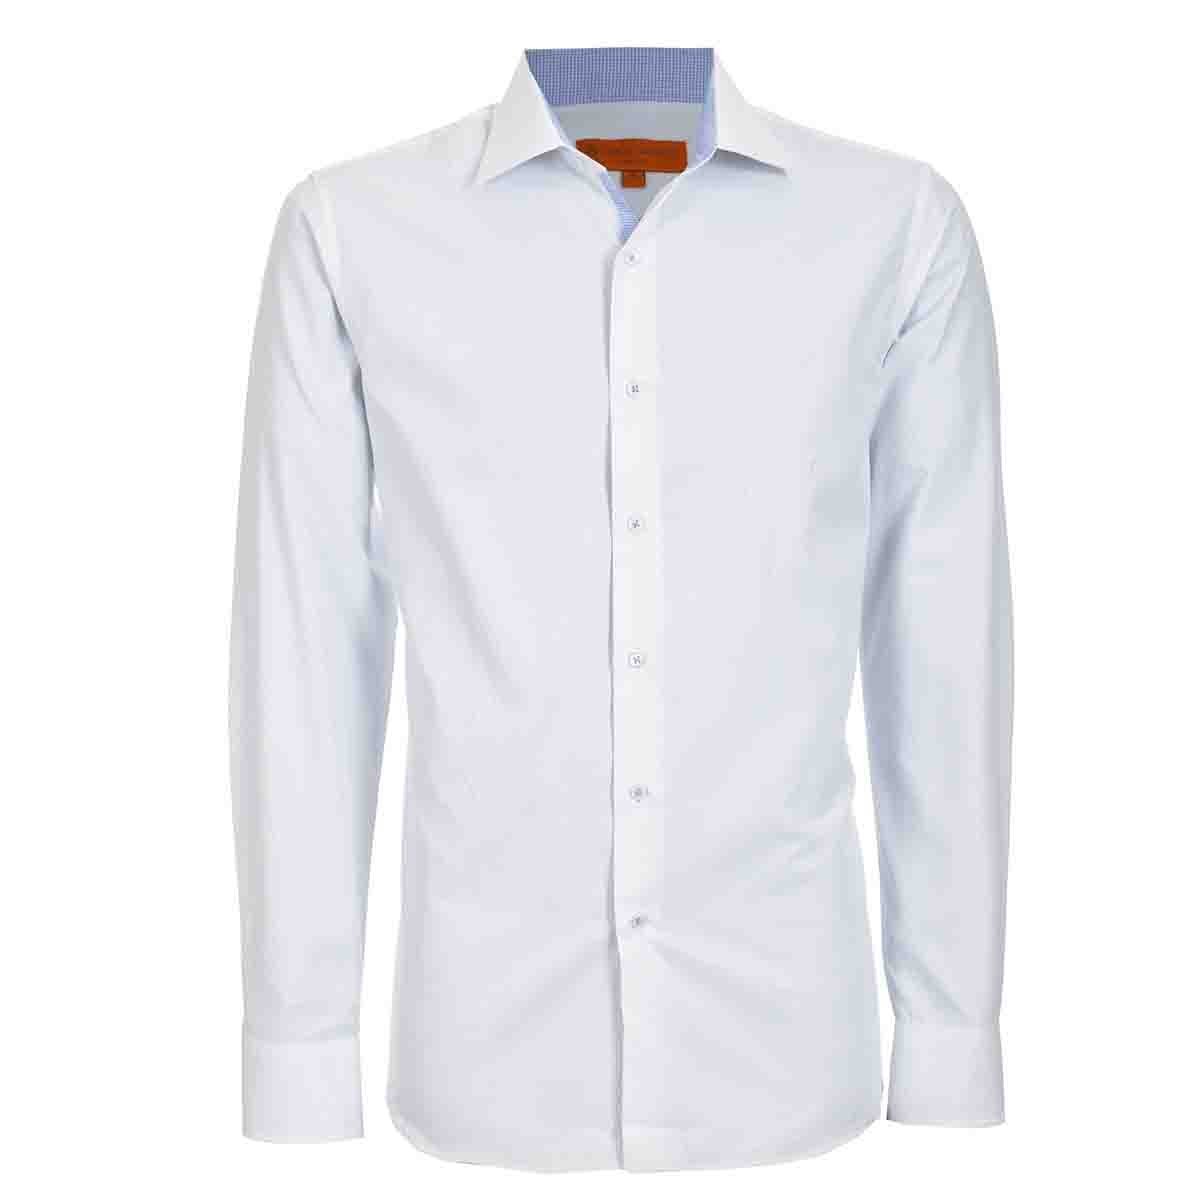 Camisa de Vestir Slim Fit Blanco Secf-0719 Carlo Corinto para Caballero